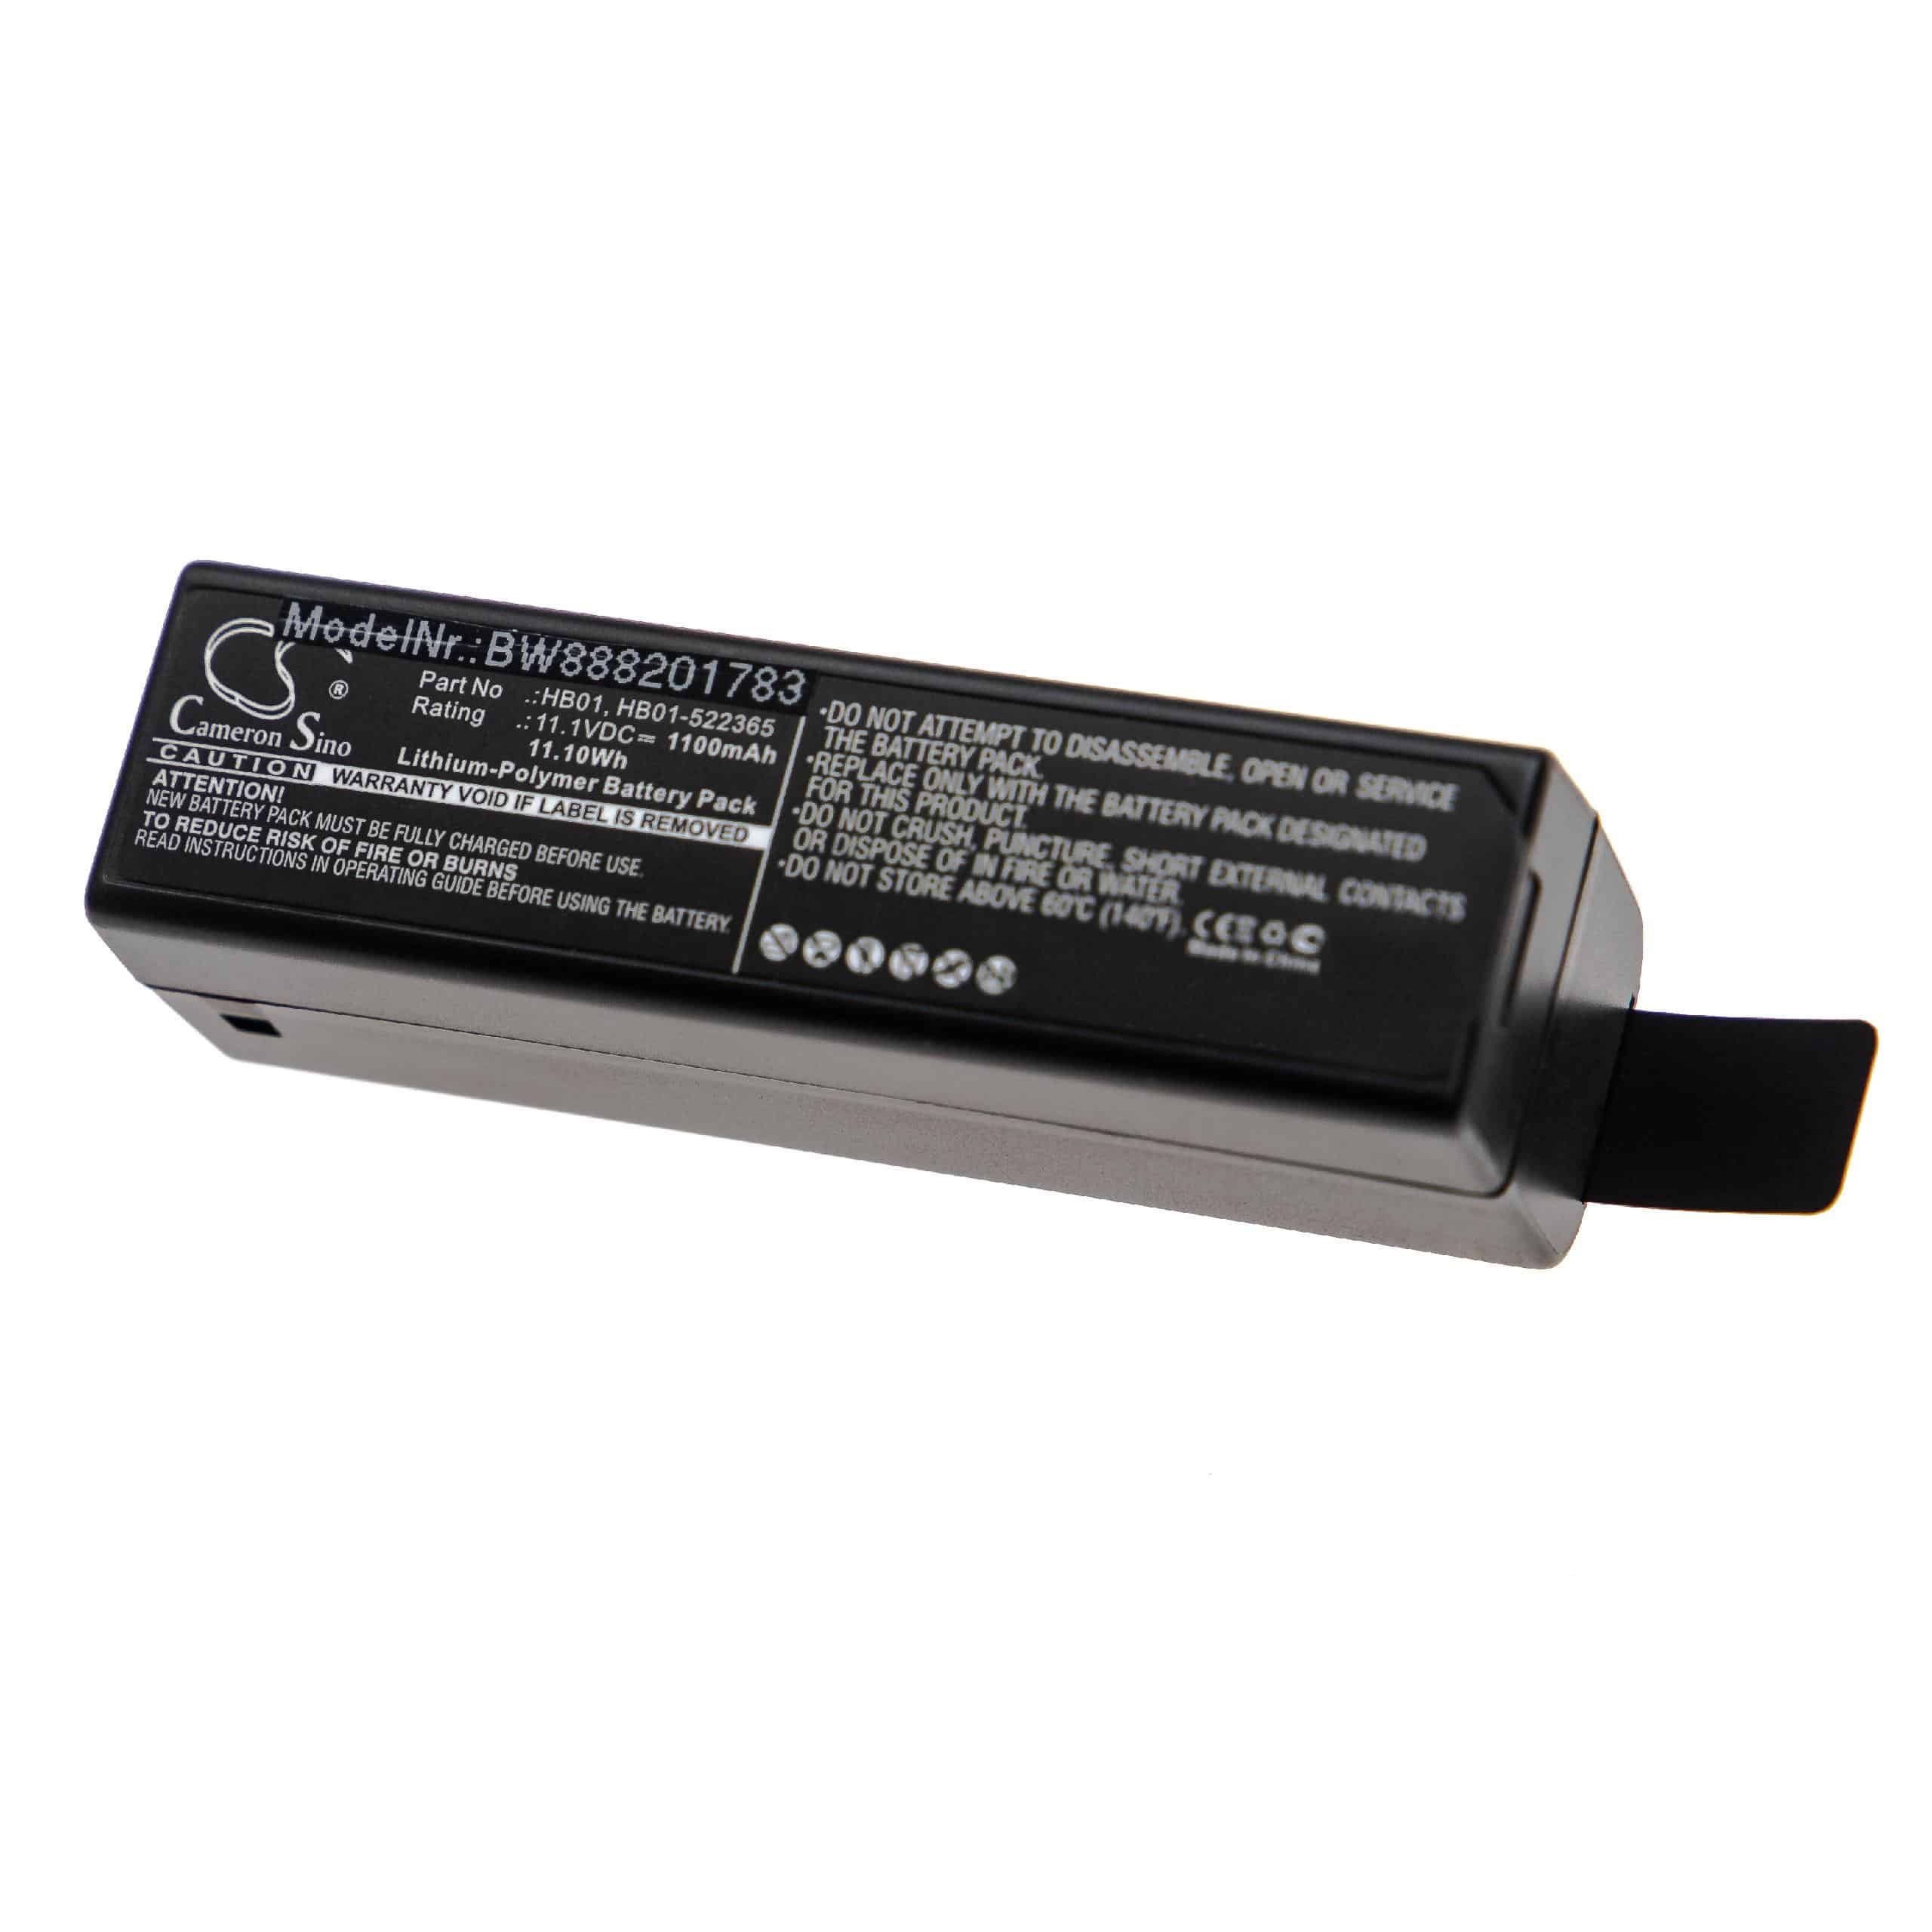 Akumulator do aparatu cyfrowego zamiennik DJI HB01, HB01-522365 - 1100 mAh 11,1 V LiPo